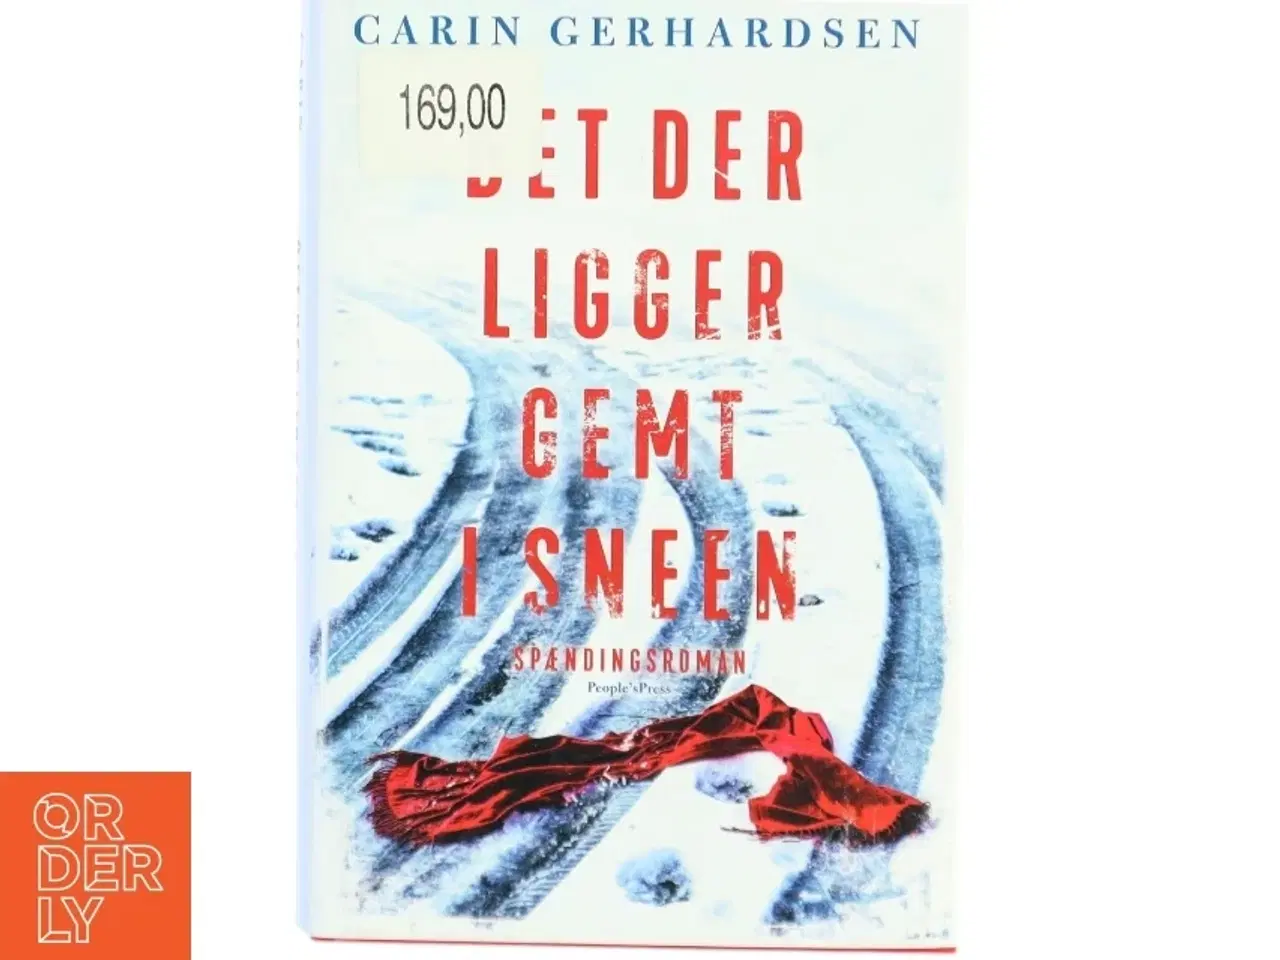 Billede 1 - Det der ligger gemt i sneen : spændingsroman af Carin Gerhardsen (Bog)